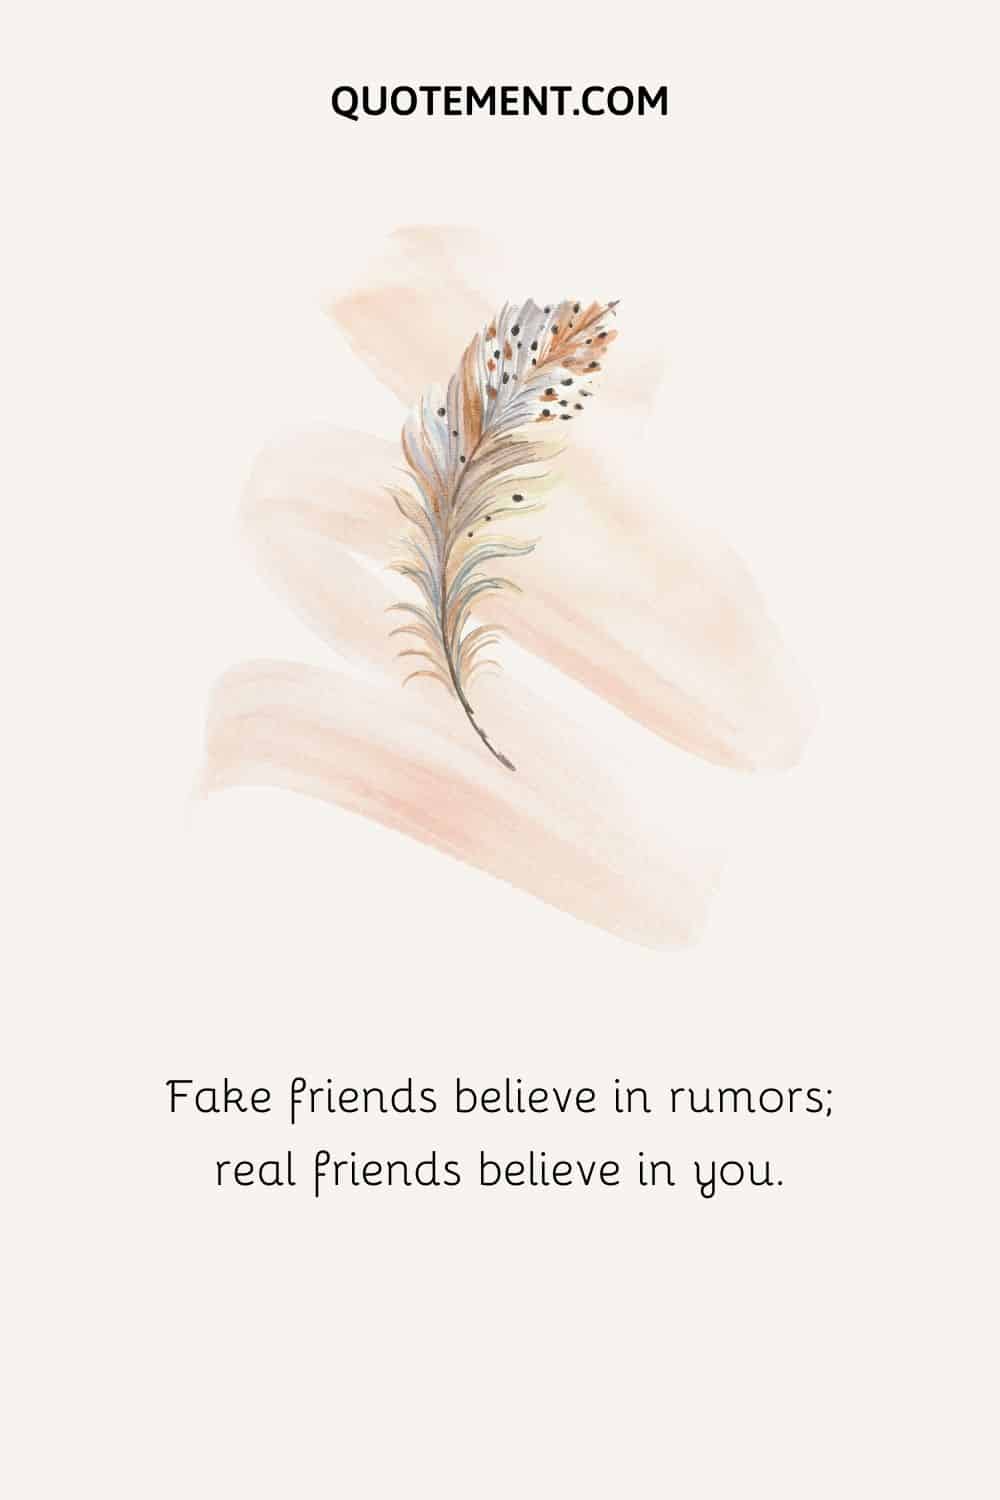 Los amigos falsos creen en los rumores; los amigos de verdad creen en ti.